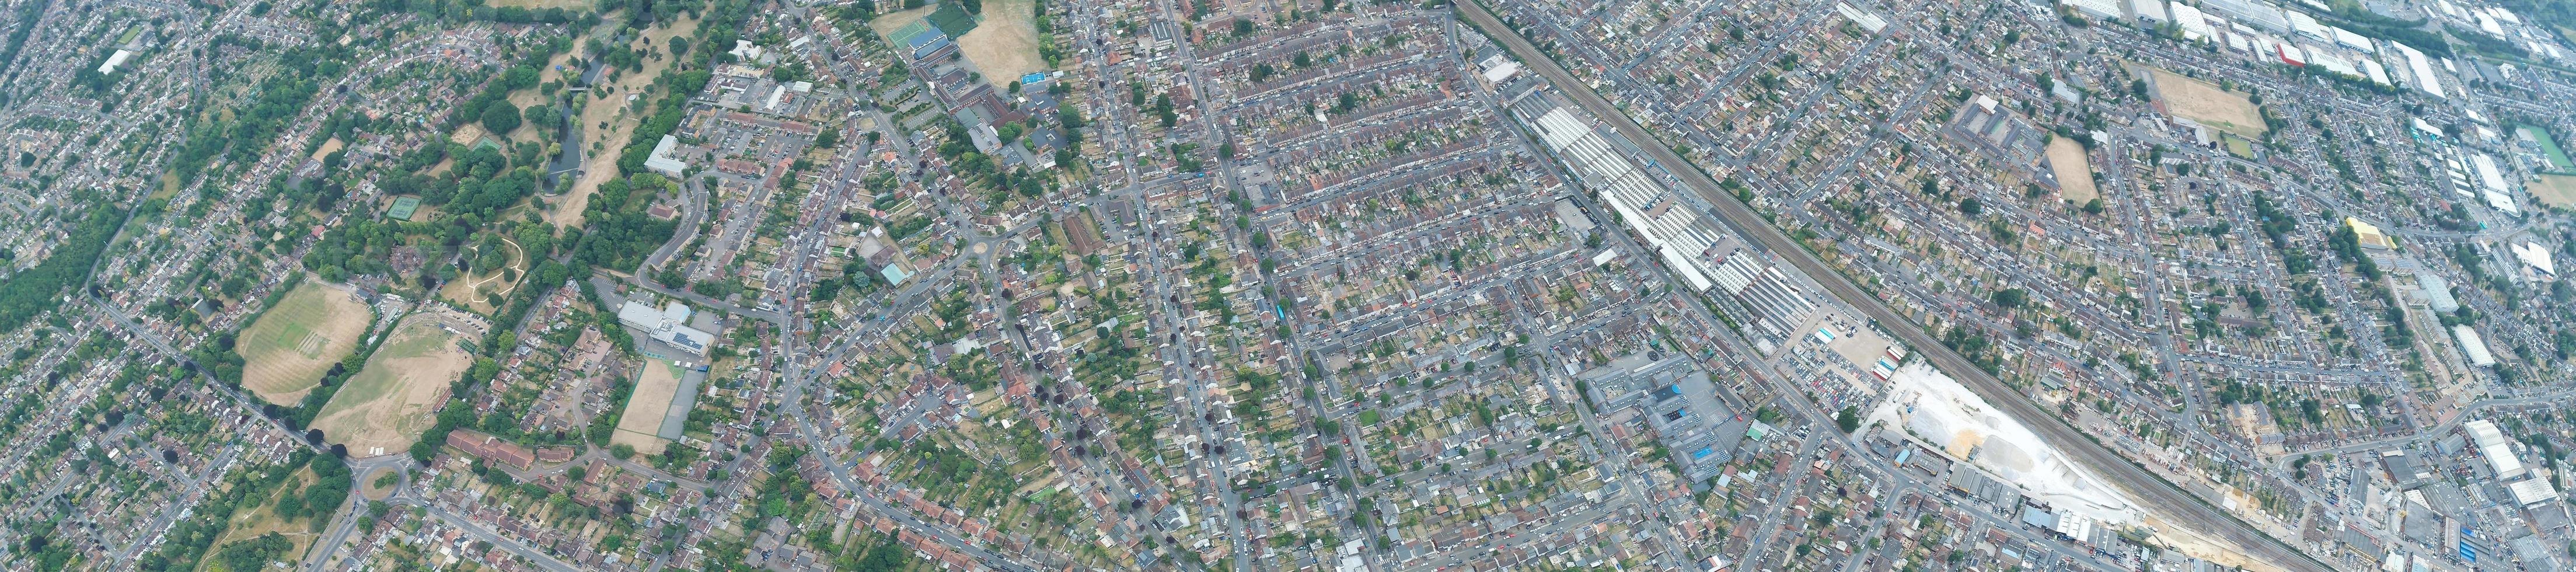 Vista panoramica aerea ad alto angolo della città di Luton, Inghilterra, Regno Unito foto